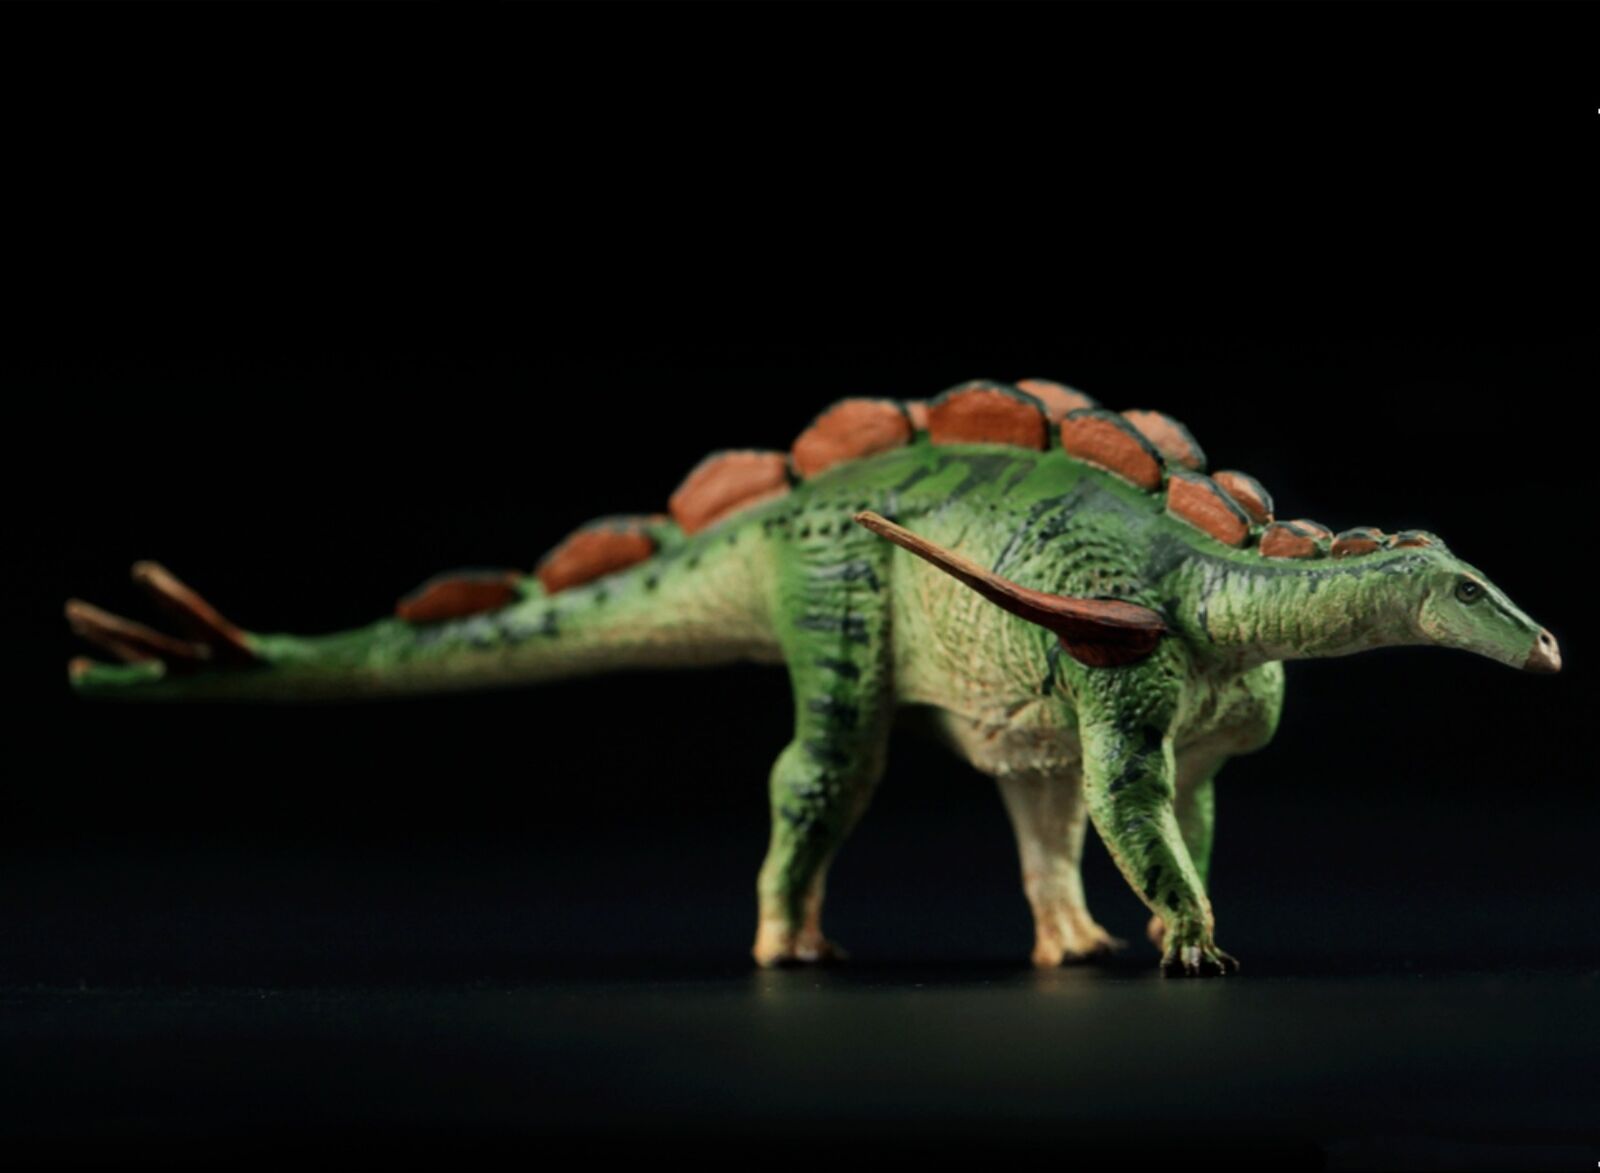 Vitae Wuerhosaurus Model Stegosaurus Dinosaur Animal FigureCollection Decor Toy 